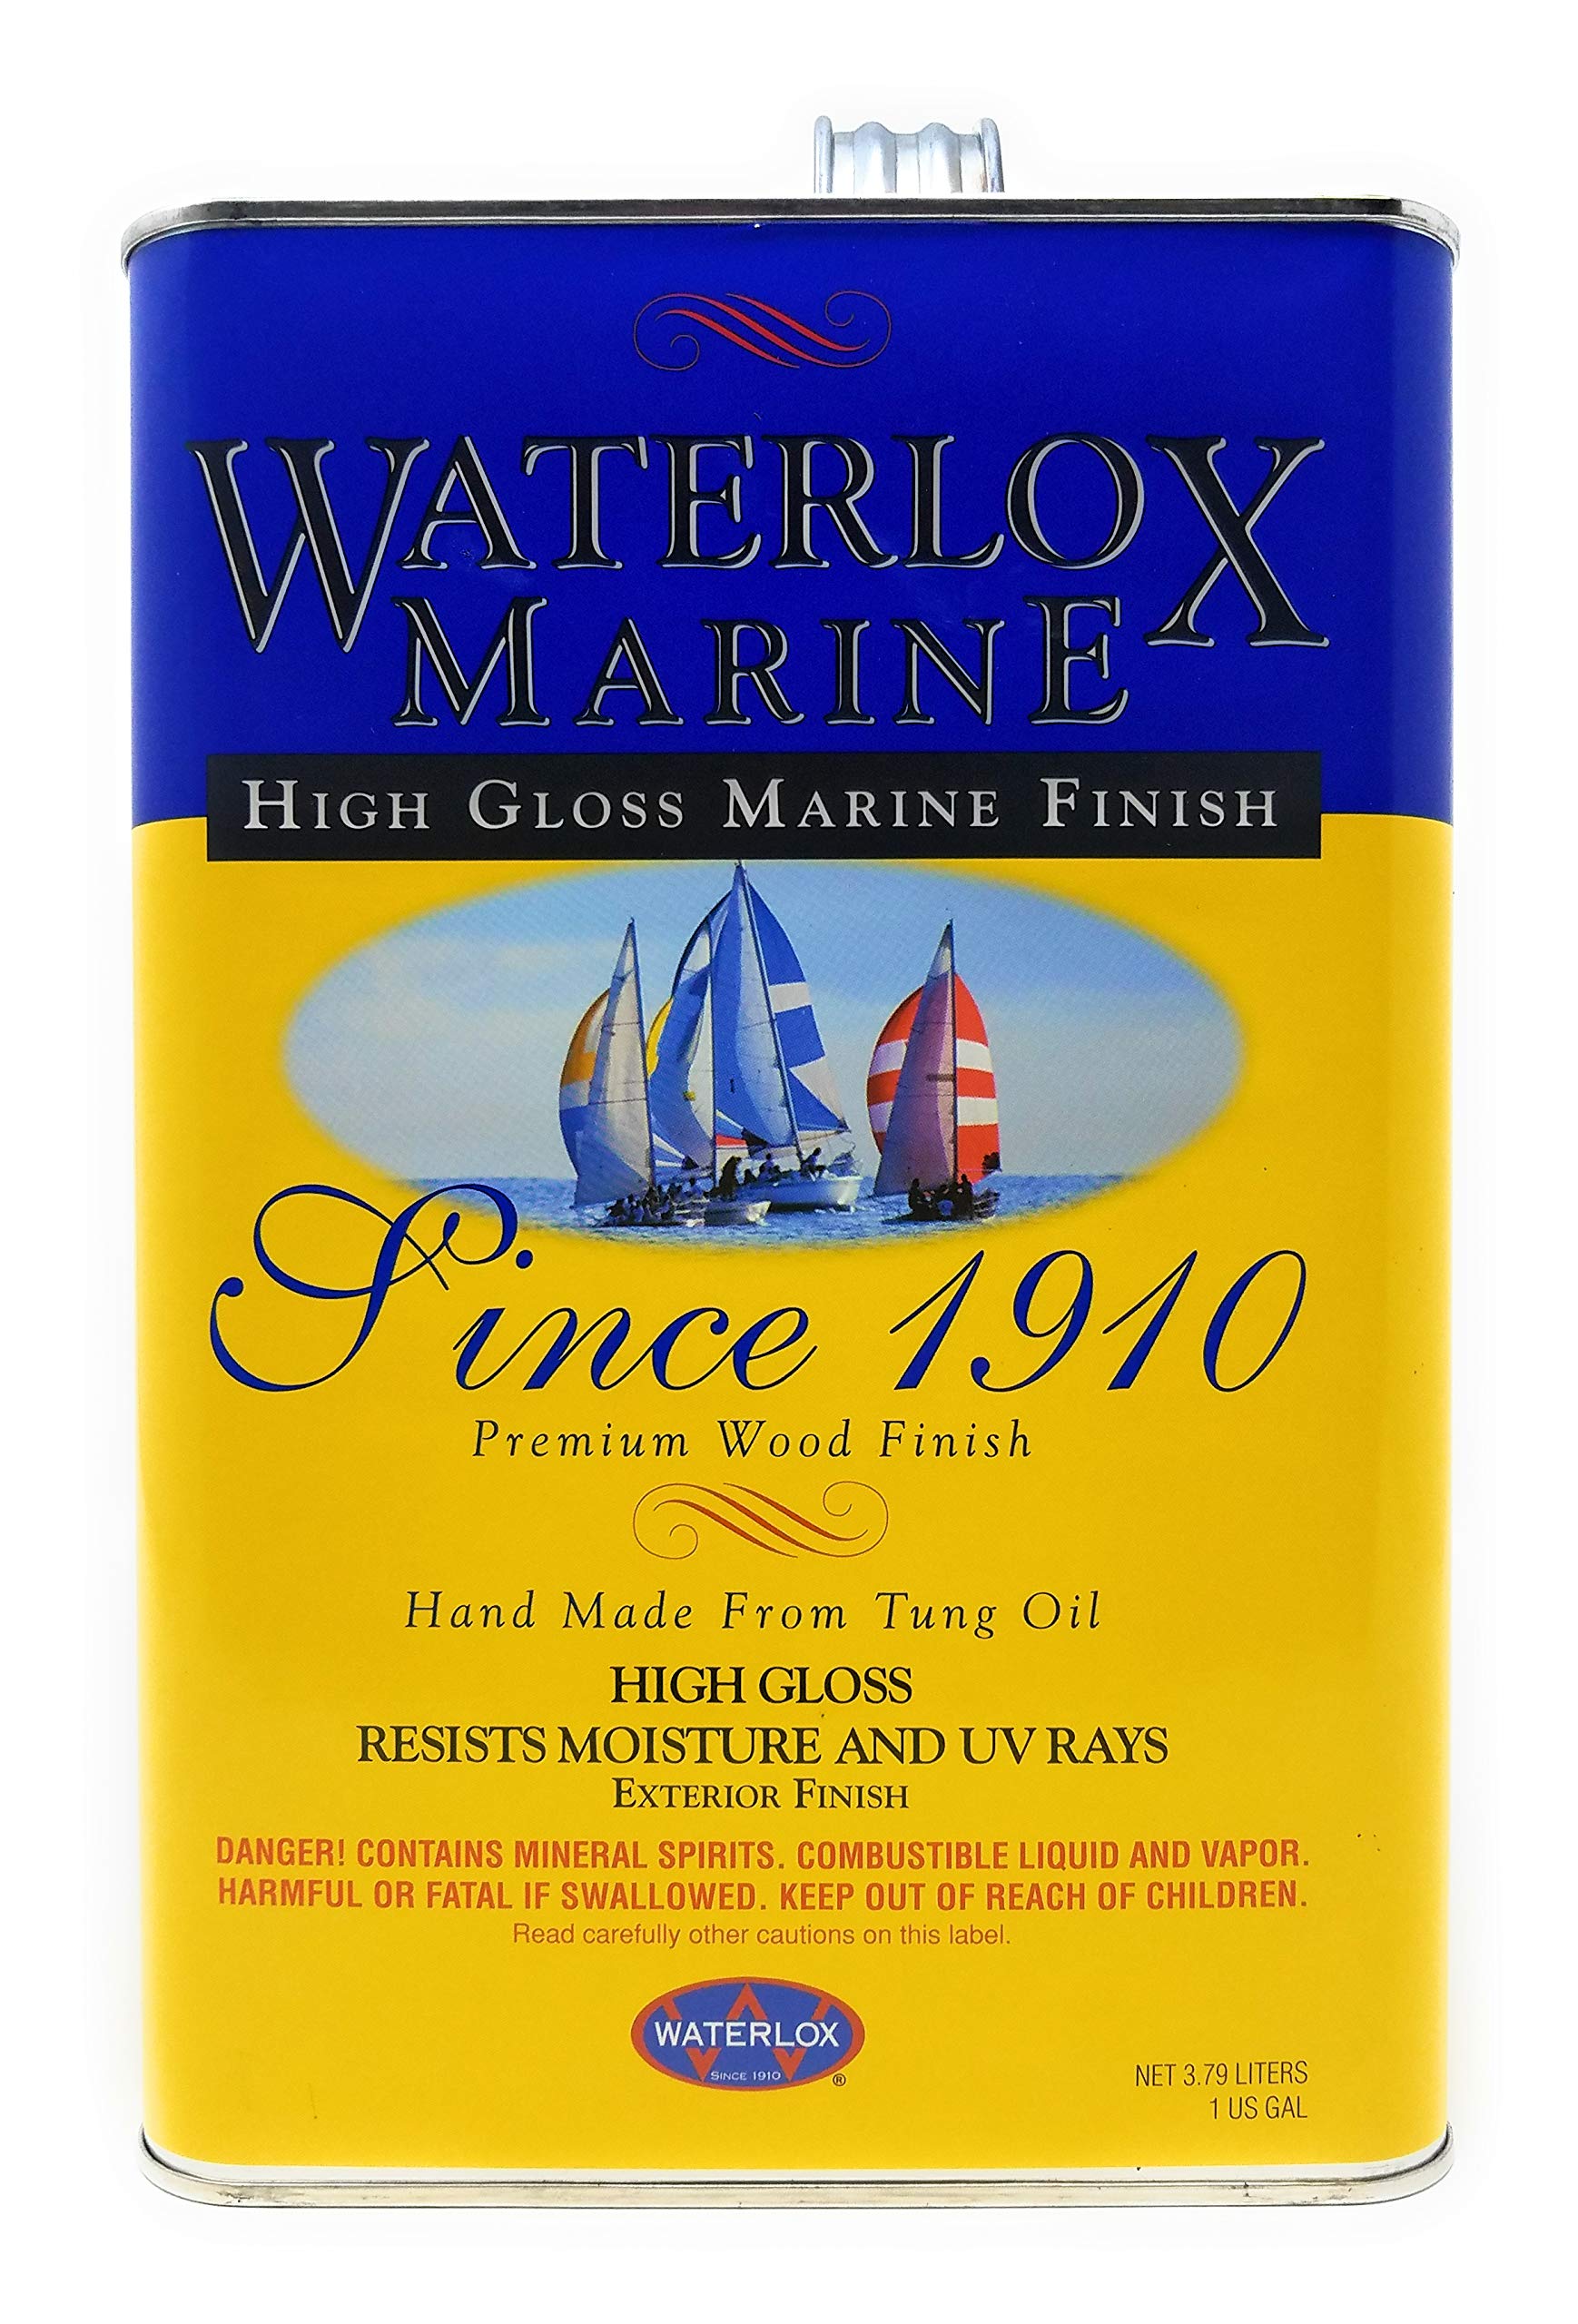 Waterlox TB3940 Marine Finish High Gloss Gallon